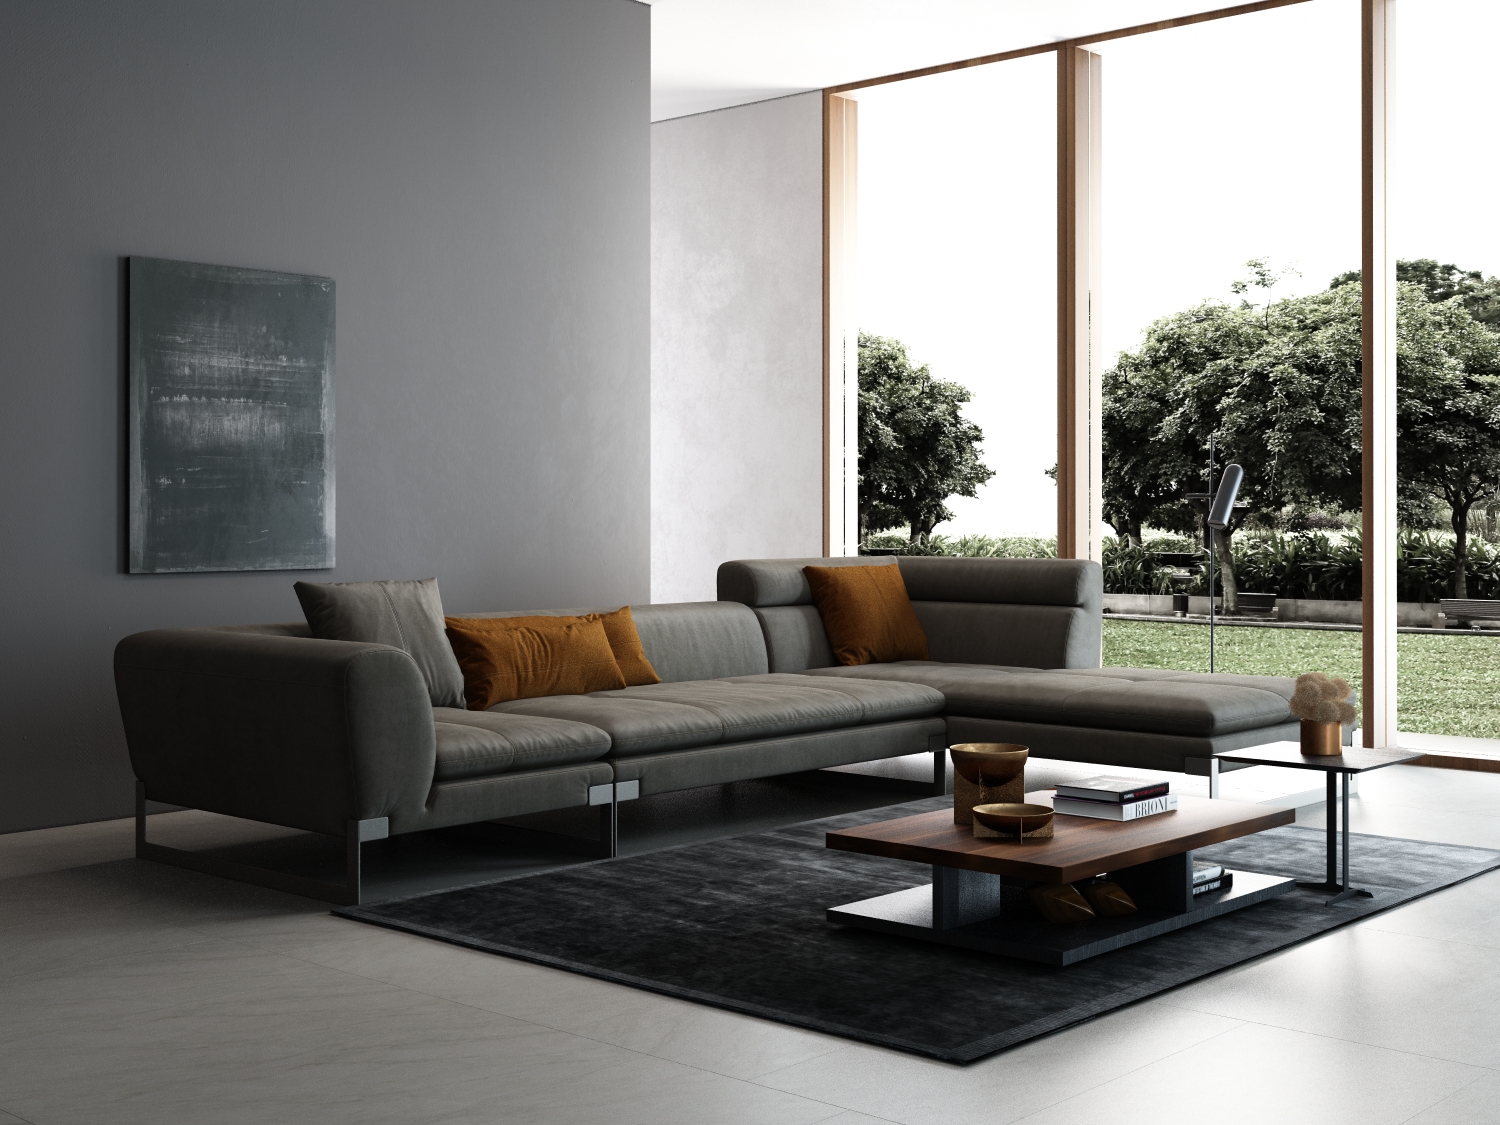 效果图 写实沙发效果图3d效果图 真皮沙发 真皮床3d效果图 3d沙发效果